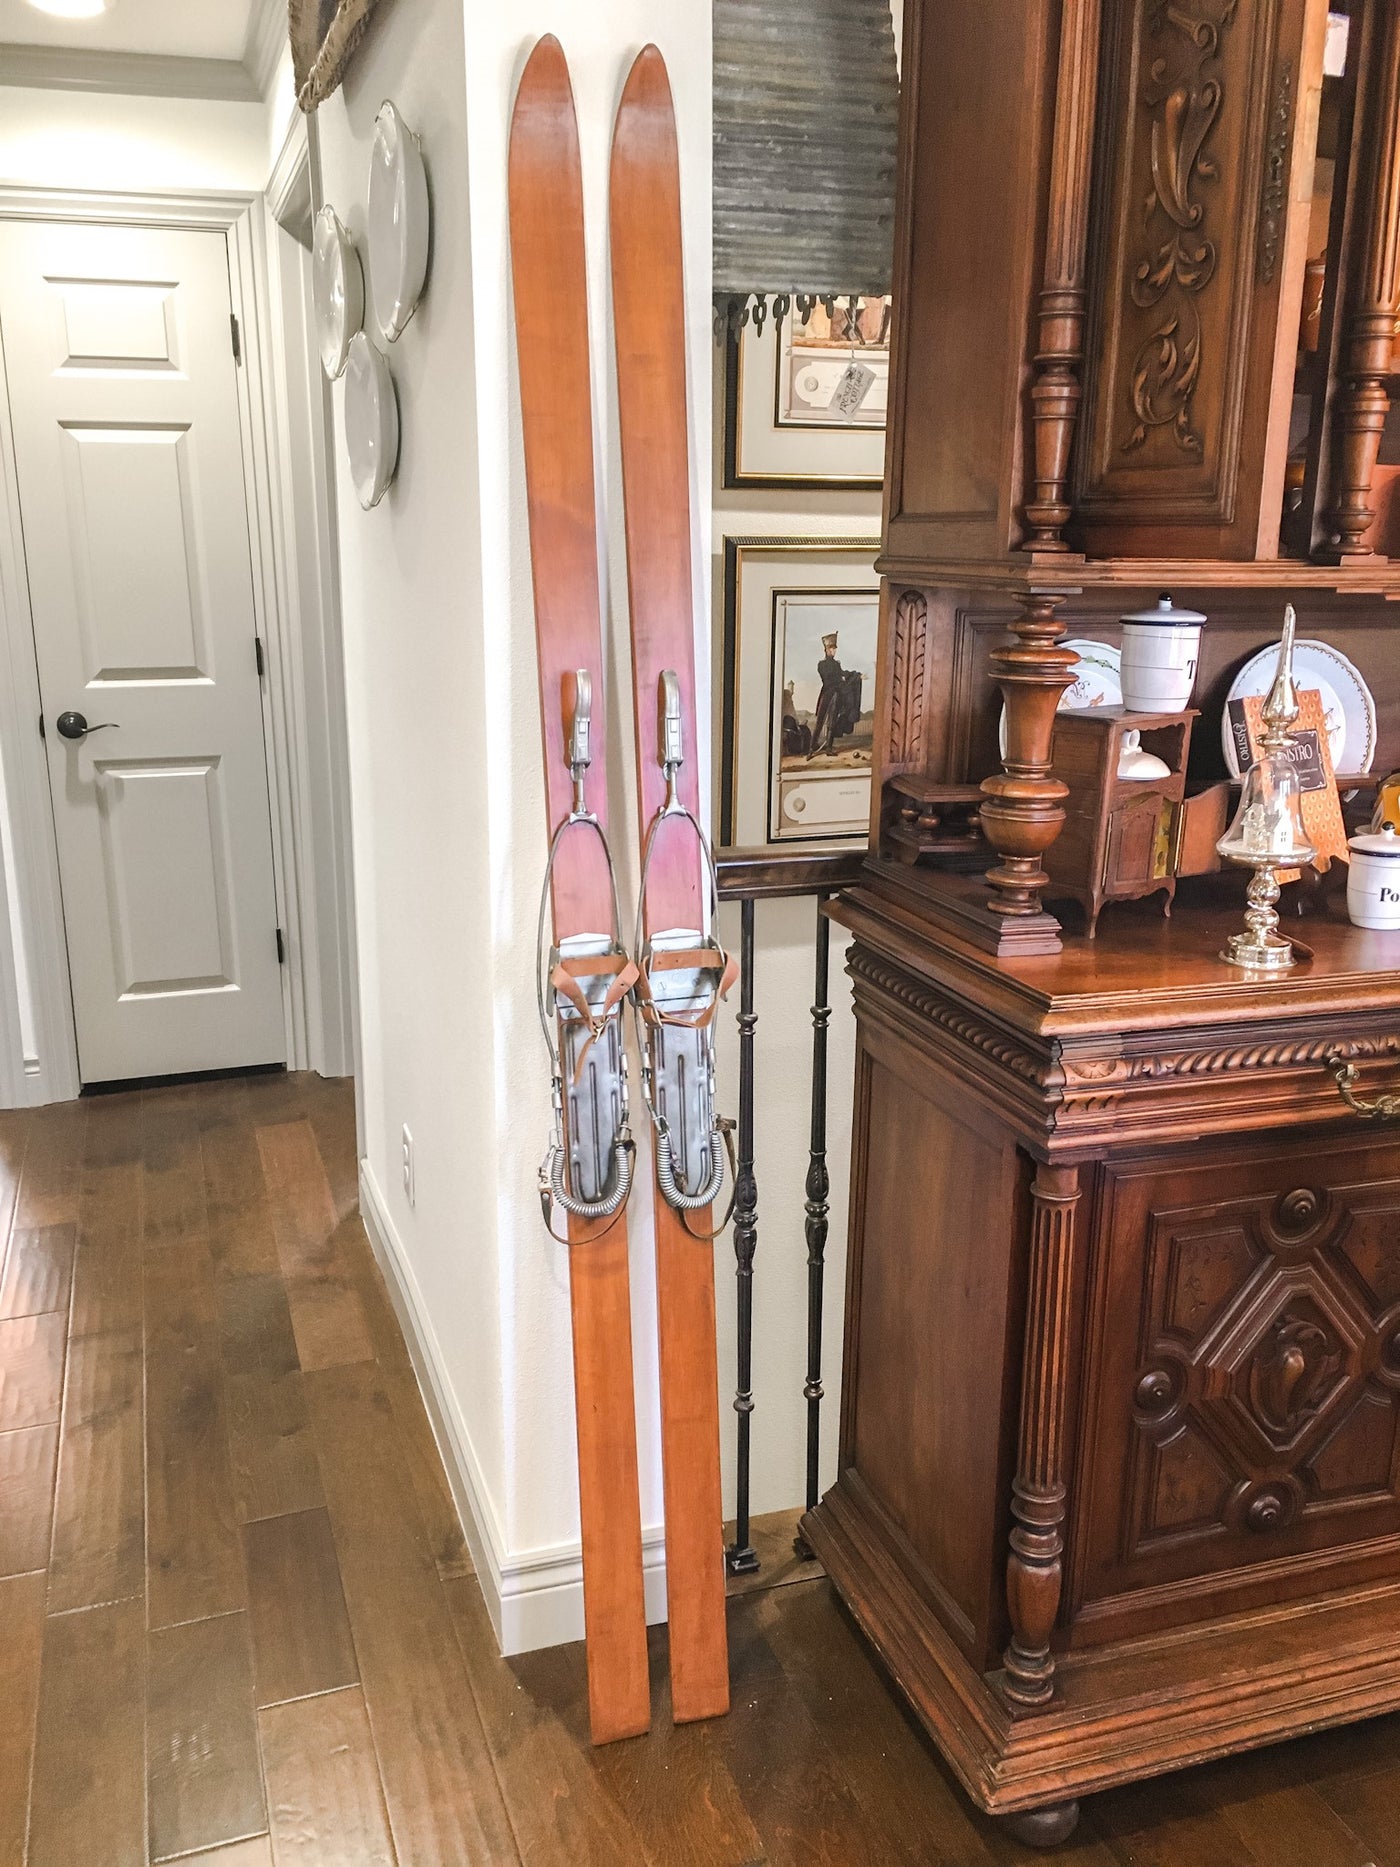 Pair of Antique Allgau Skis